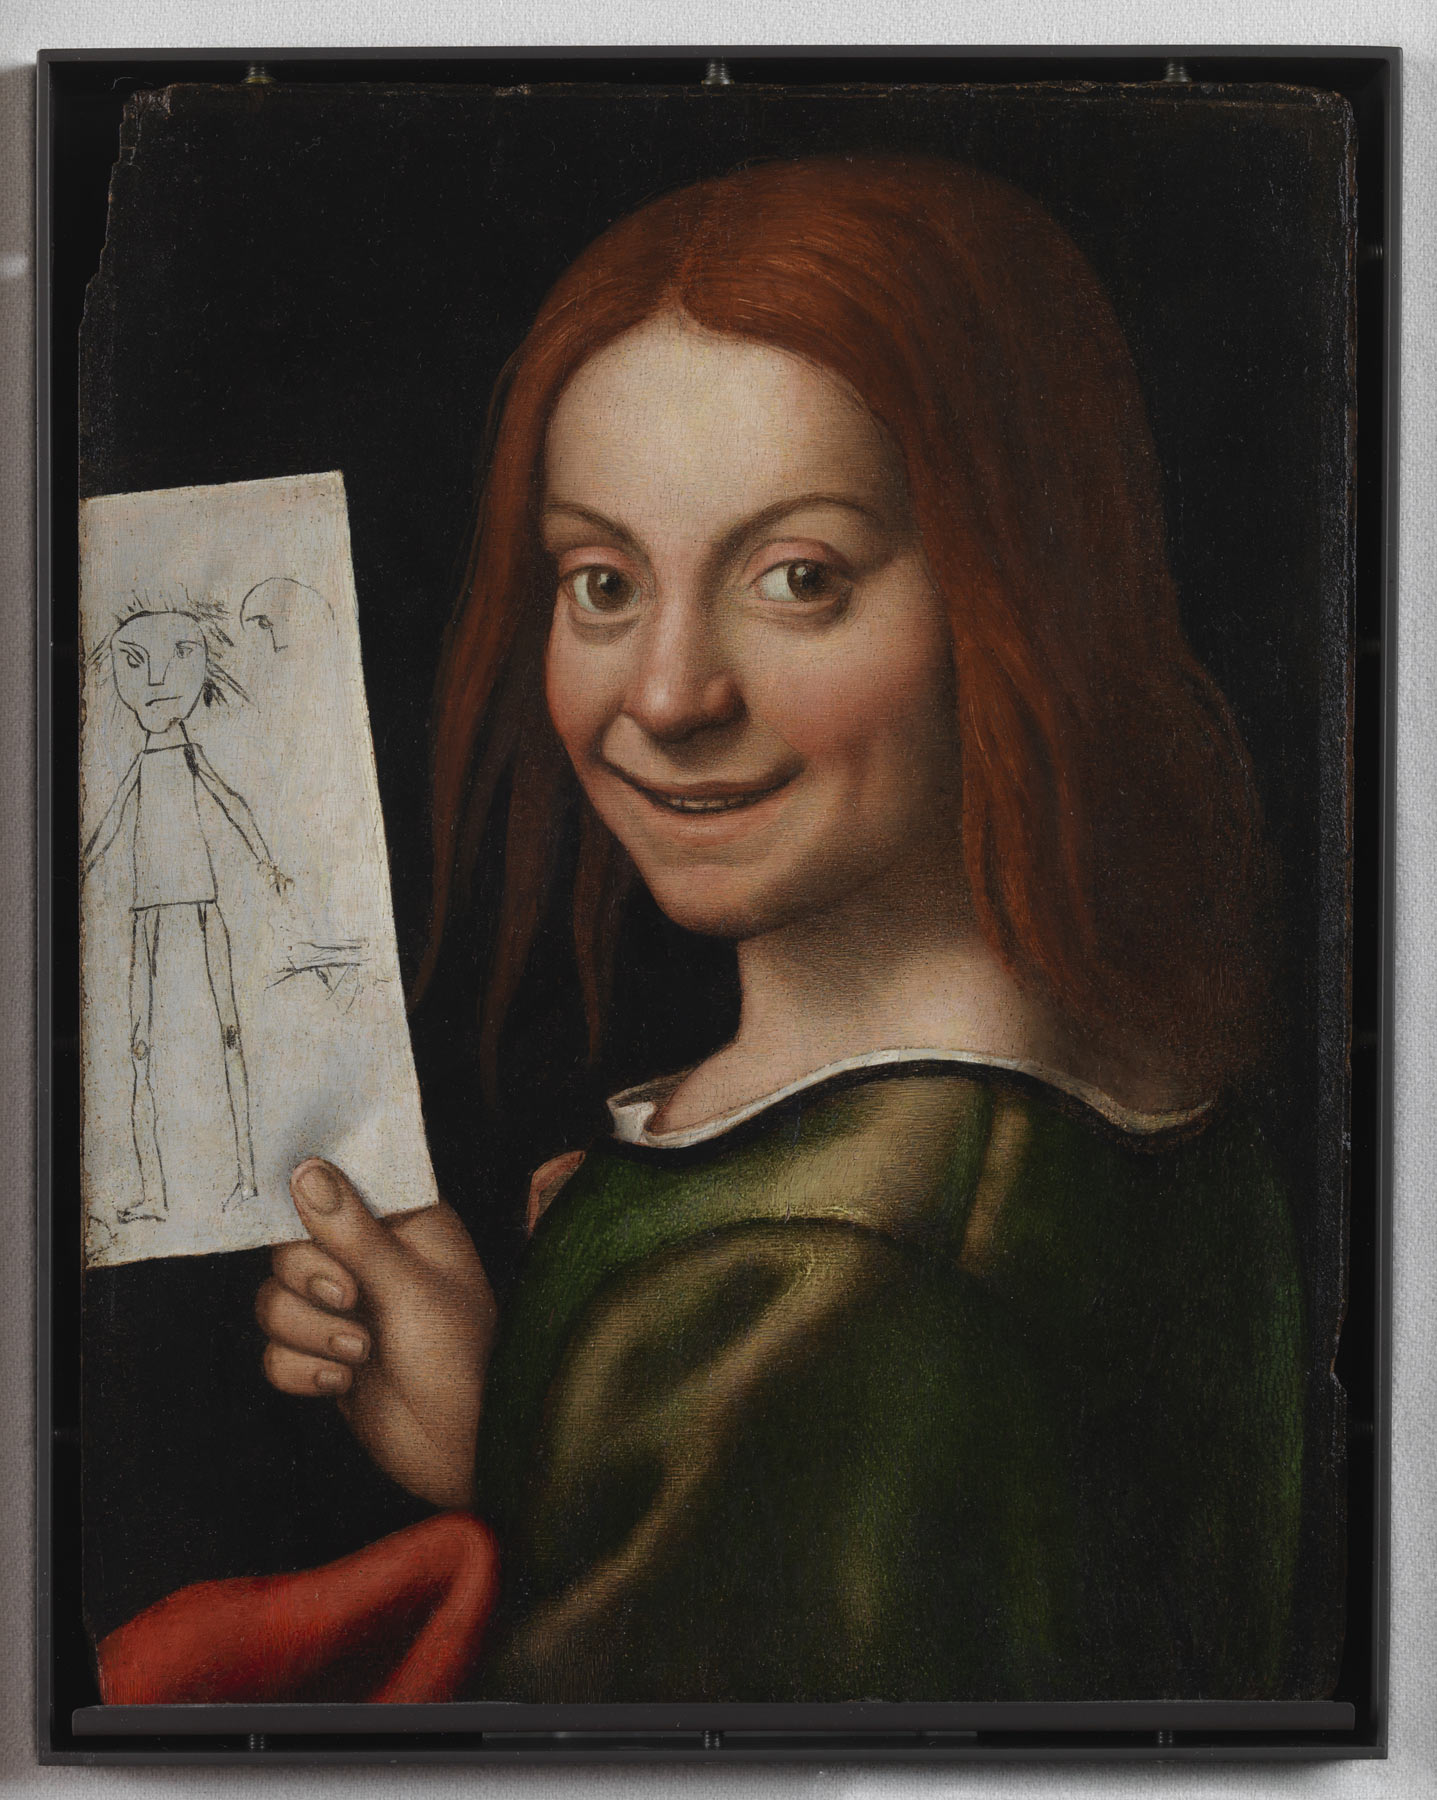 Giovan Francesco Caroto, Ritratto di Fanciullo con disegno (1515-1520; olio su tavola, 37 x 29 cm; Verona, Museo di Castelvecchio)